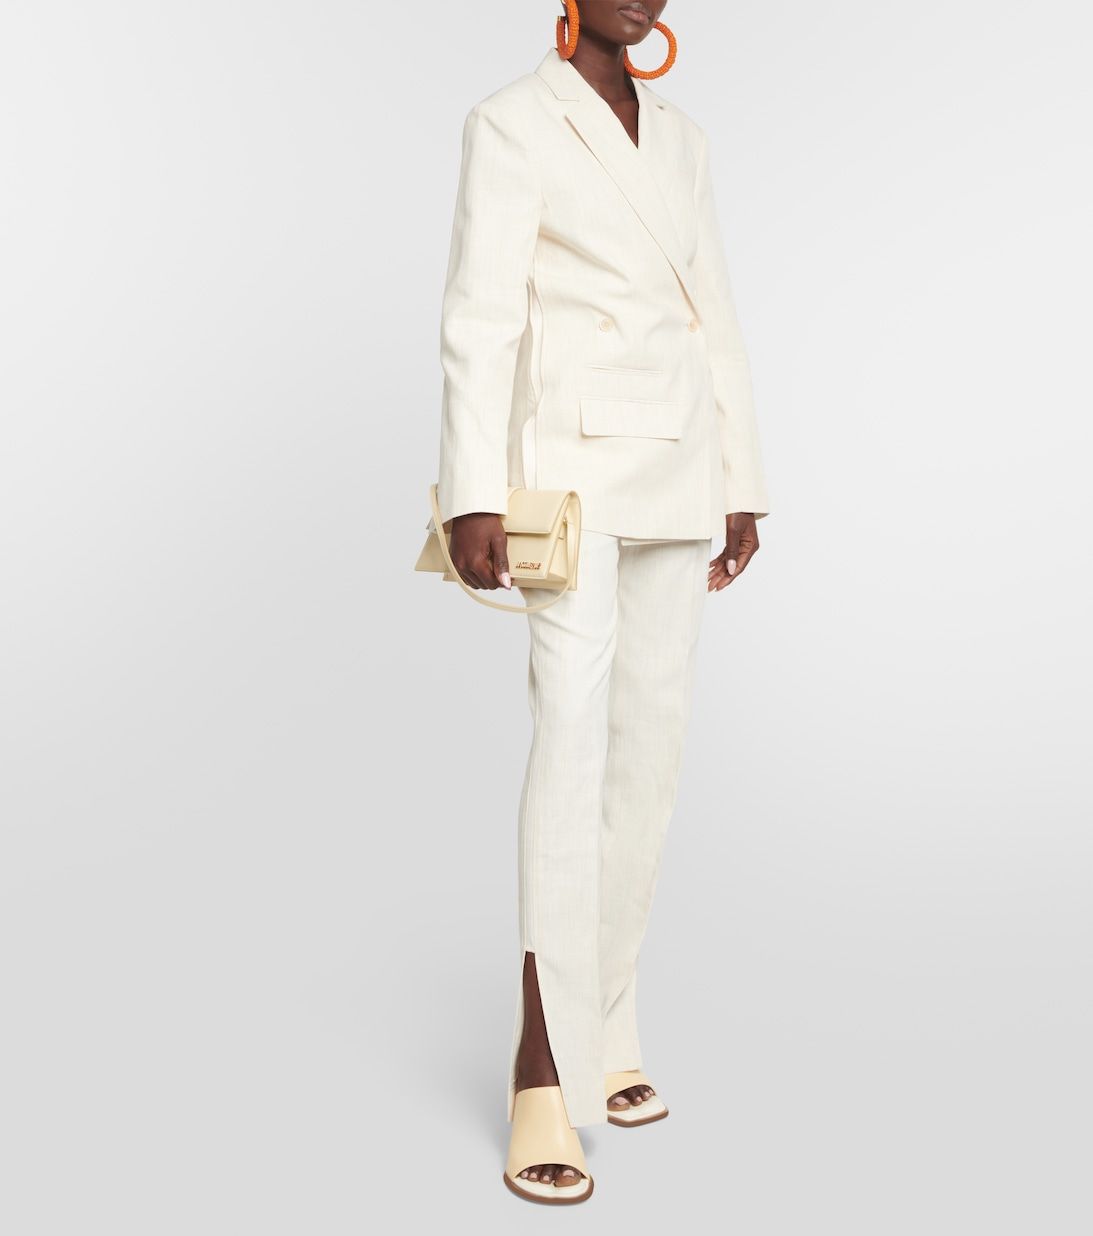 Women's White Tuxedo | Tailor-made | $309 - Sumissura